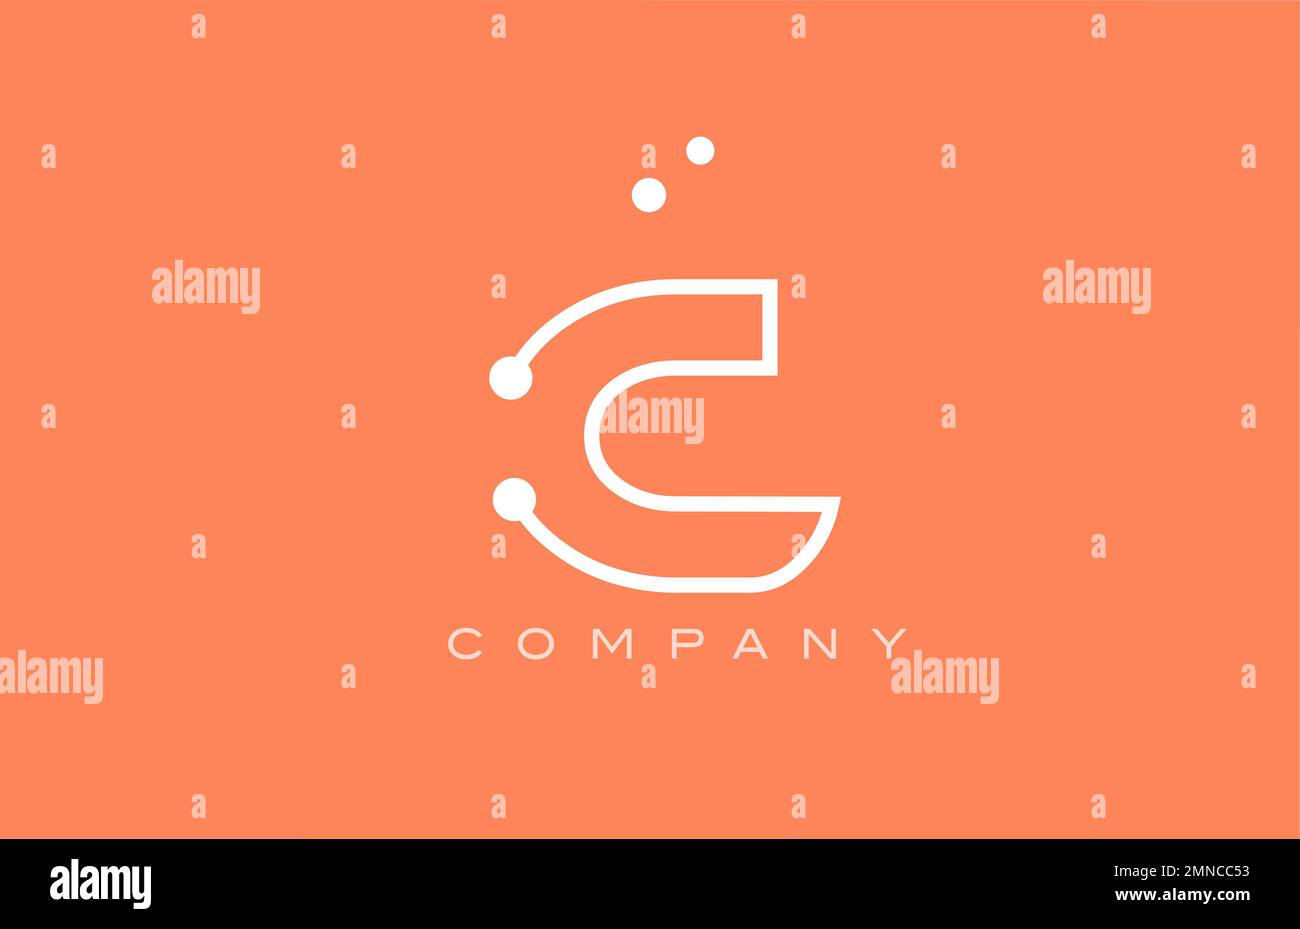 Logo-Symbol mit orangefarbenem, weißem Punktmuster und Buchstaben. Kreative Vorlage für Unternehmen und Unternehmen Stock Vektor